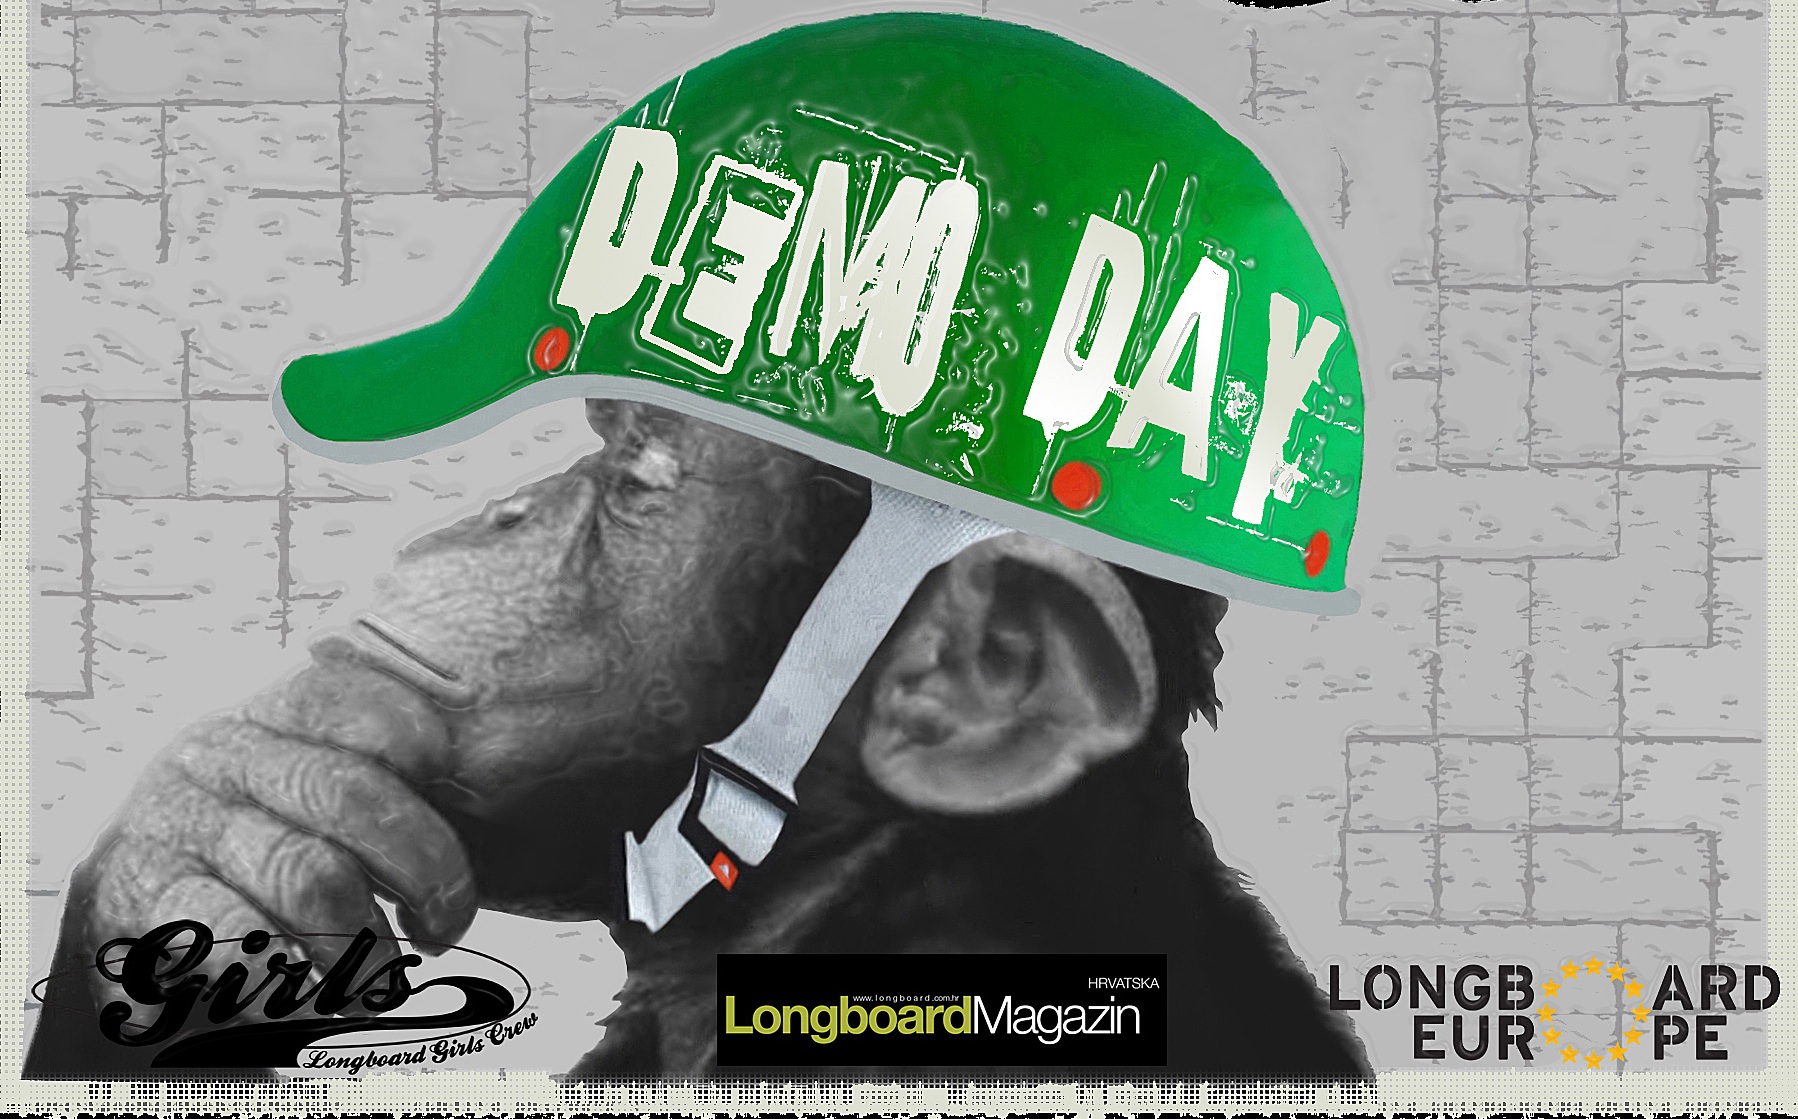 Longboard Demo Day in Croatia!